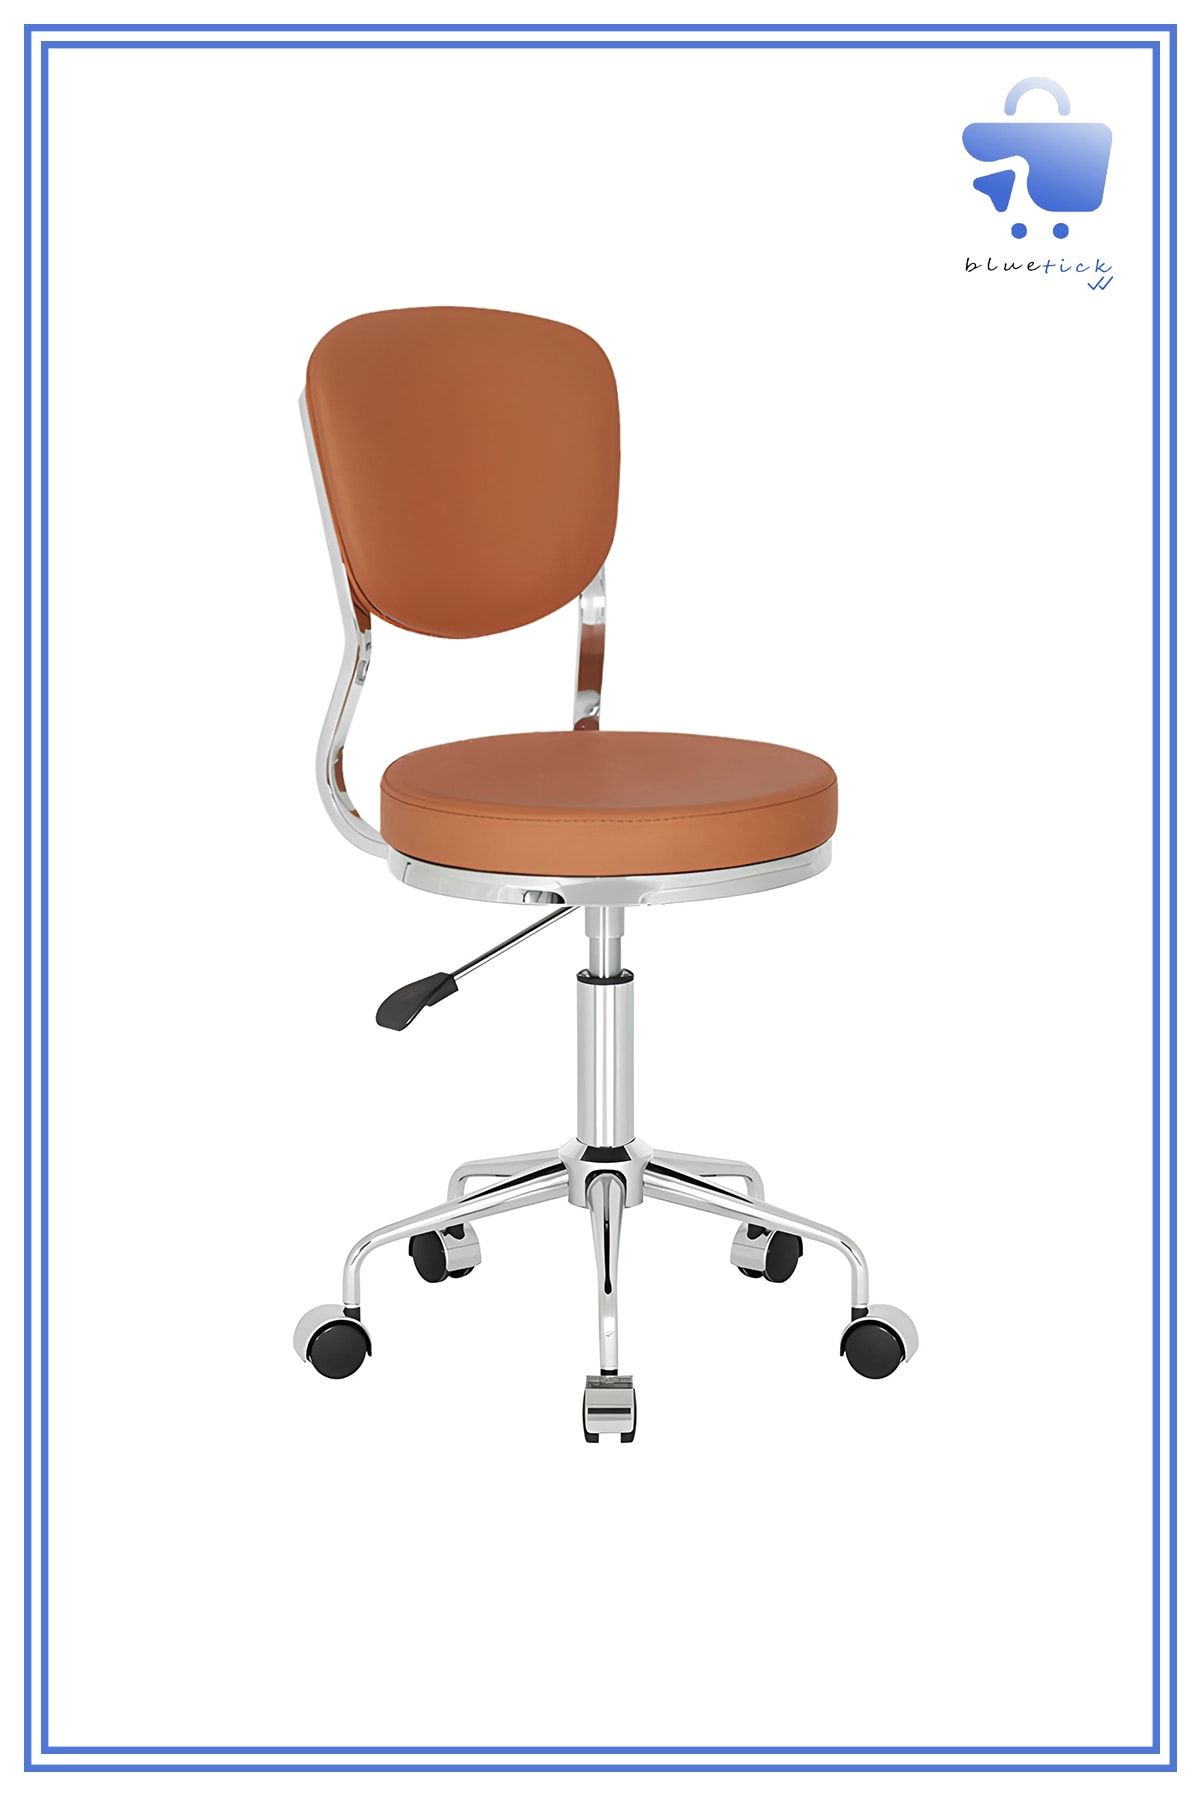 bluetick Obje Küçük Ofis Çalışma Sandalyesi